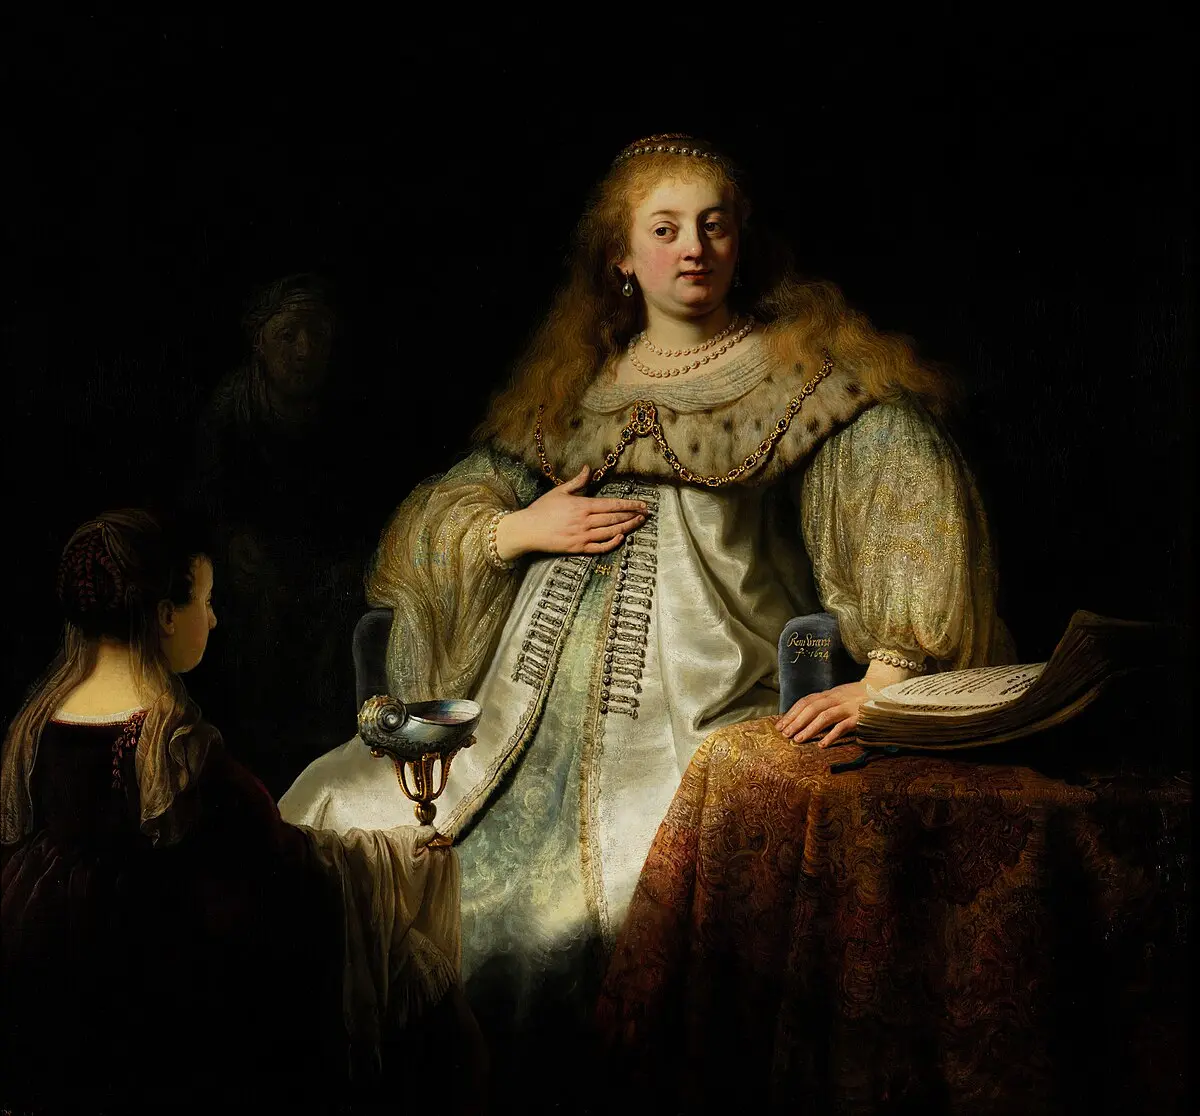 artemisa rembrandt museo del prado - Qué representa el cuadro de Artemisa de Rembrandt